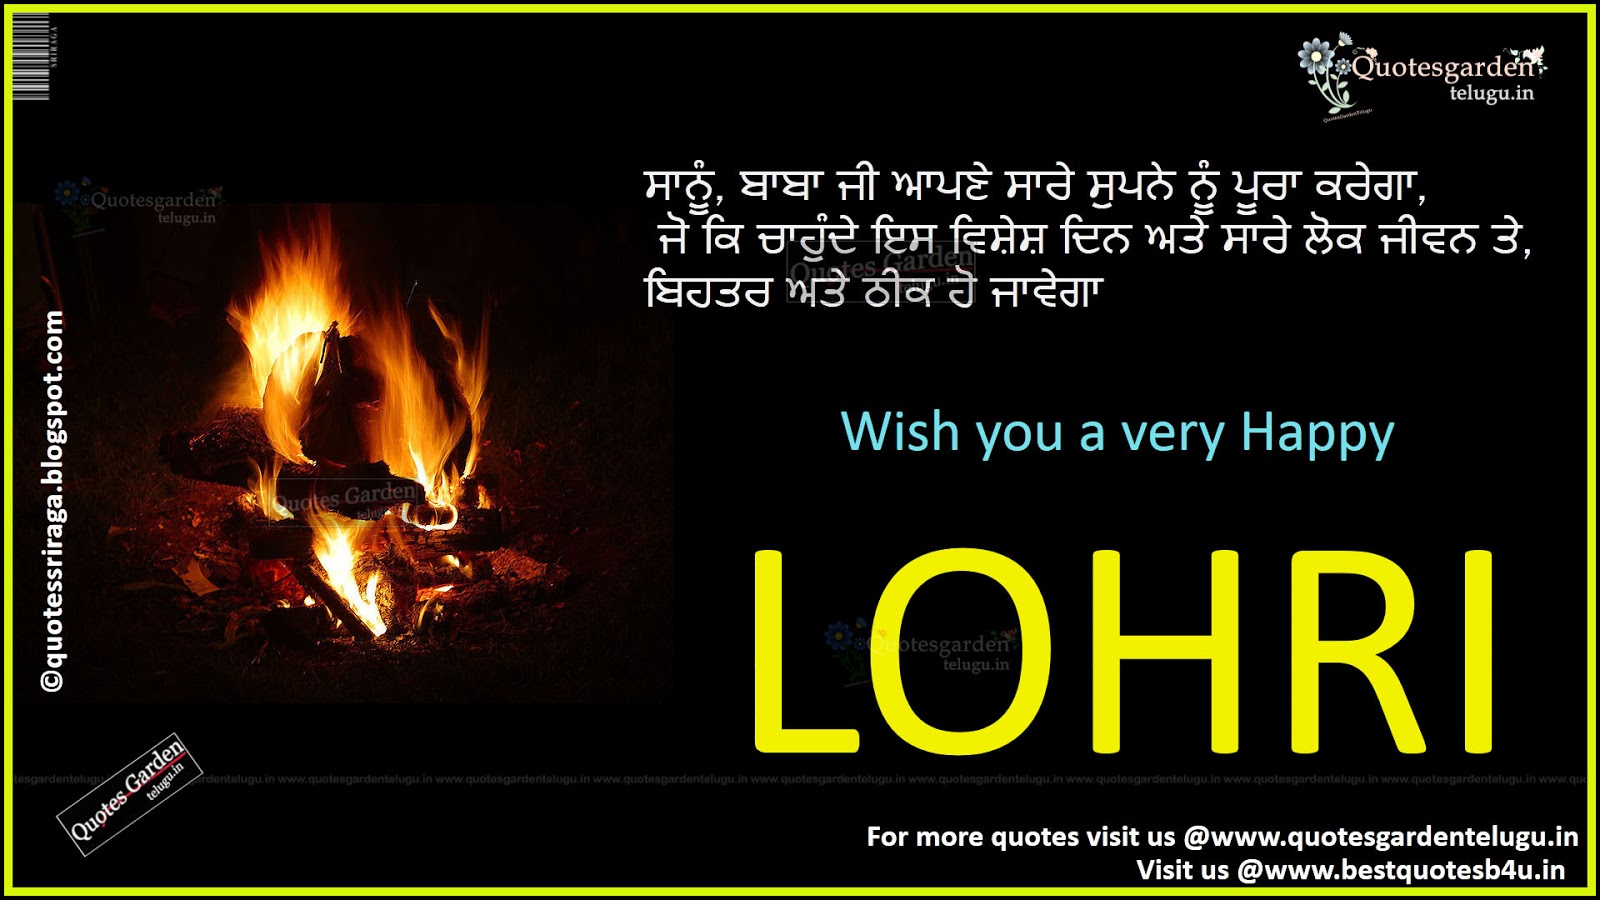 Happy Lohri 2016 Greetings Quotes in Panjabi | QUOTES GARDEN TELUGU |  Telugu Quotes | English Quotes | Hindi Quotes |